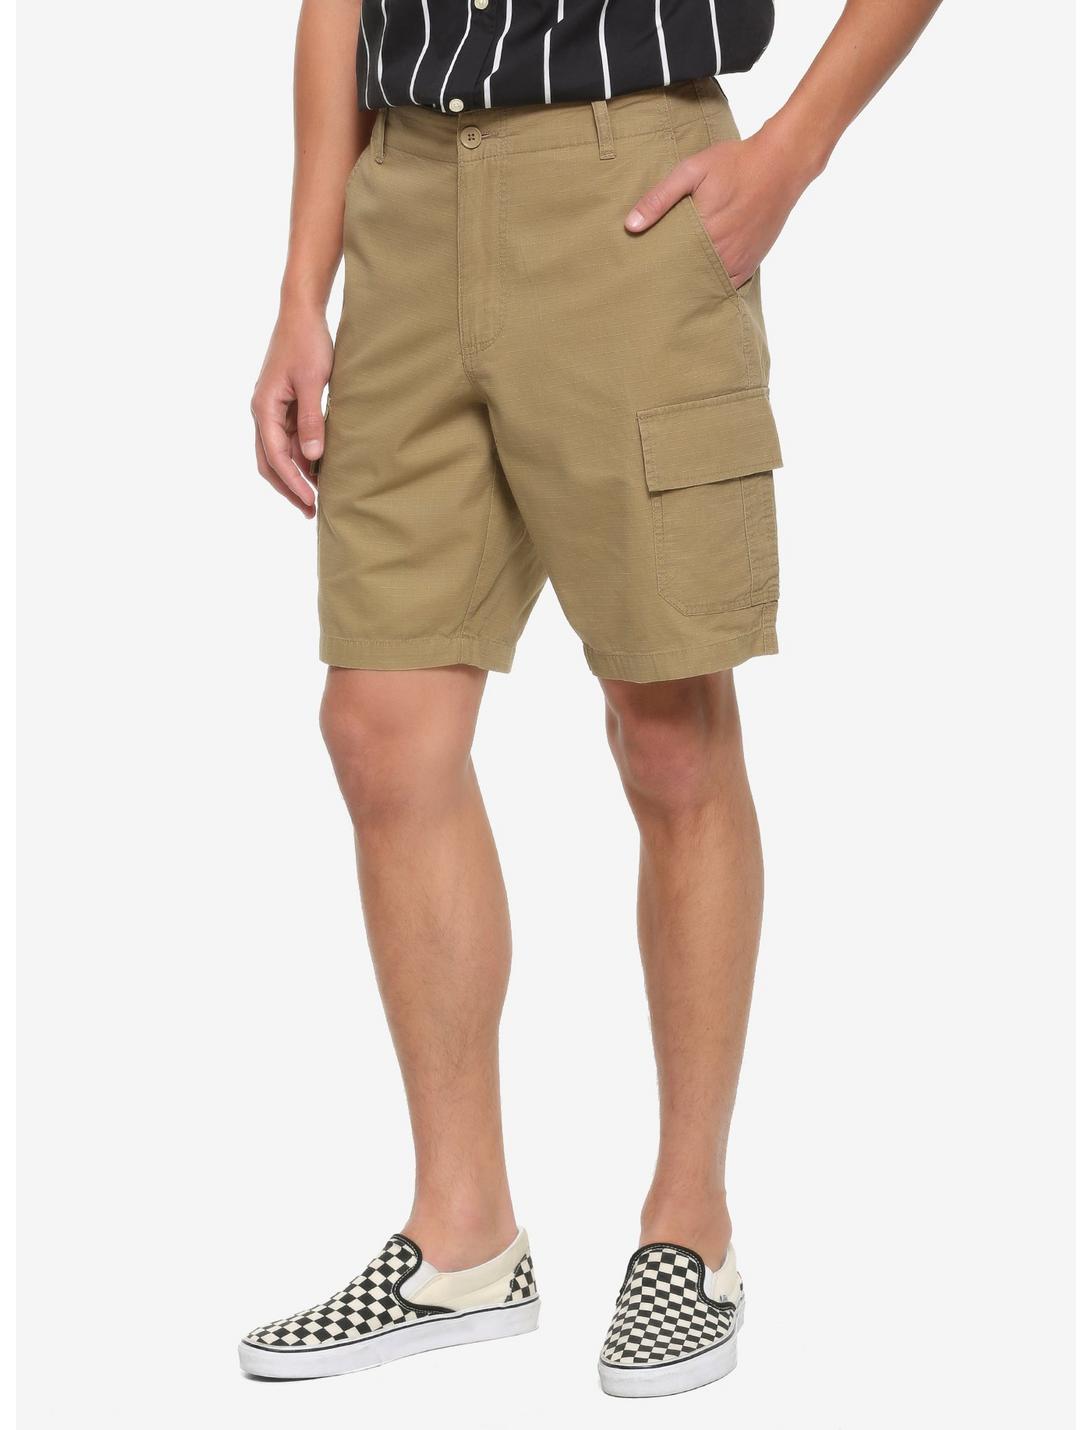 HT Denim Tan Cargo Shorts, , hi-res